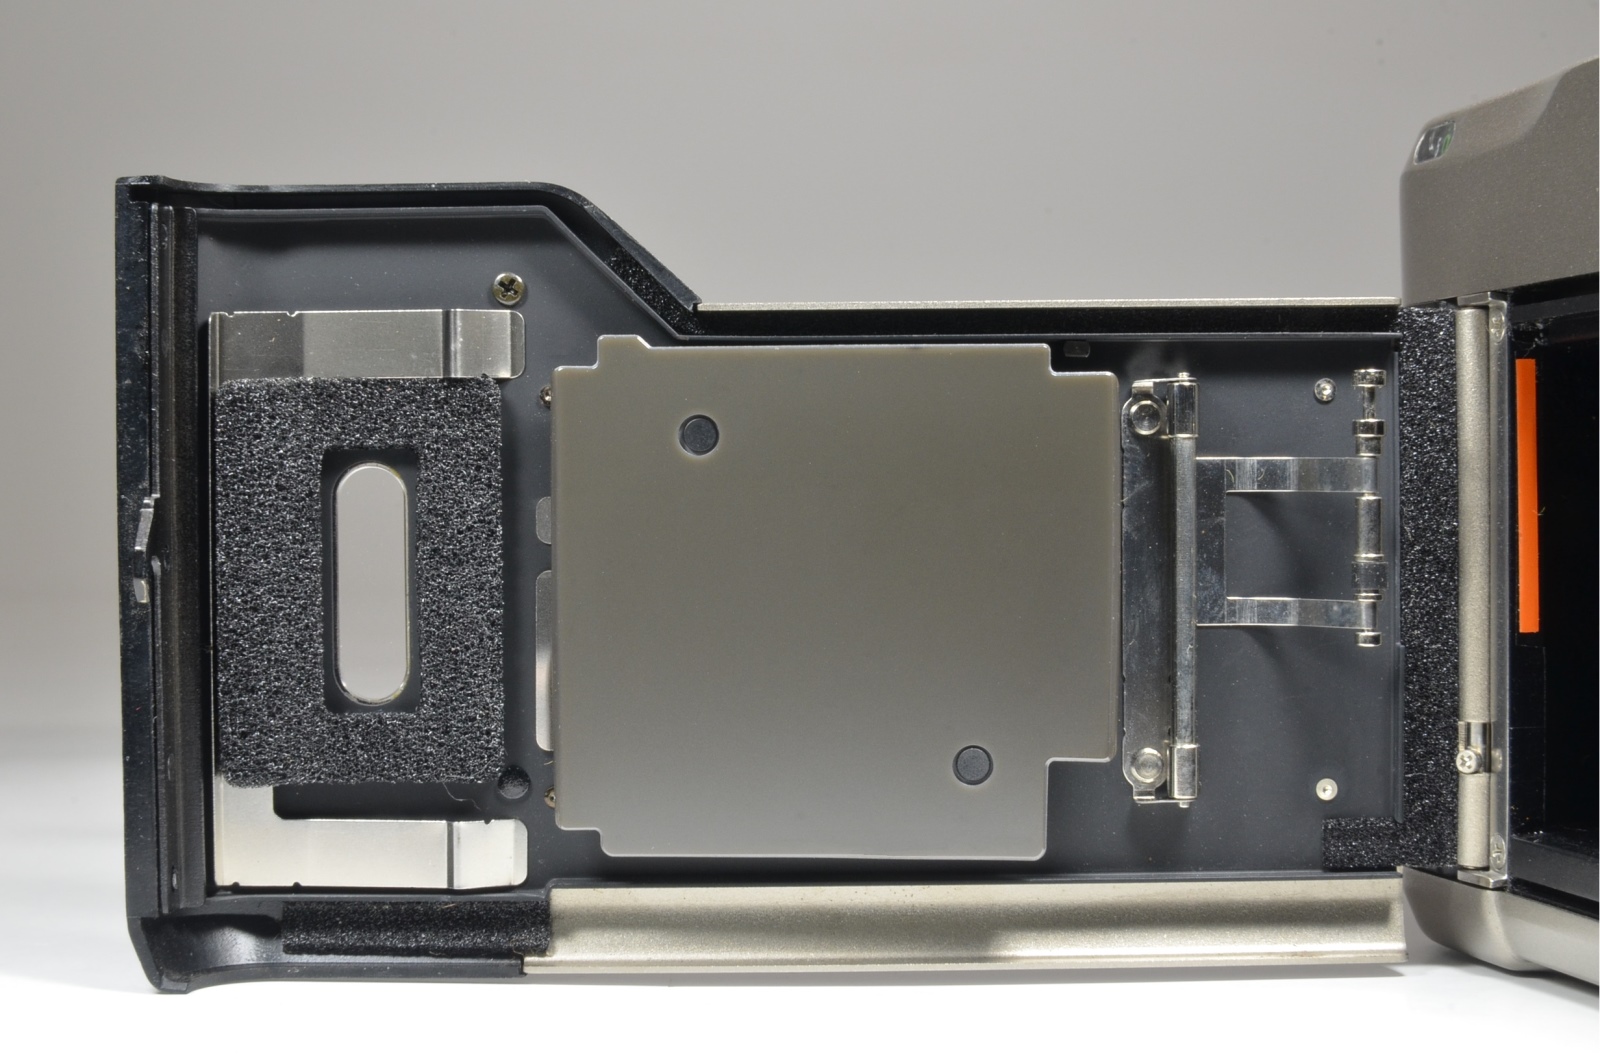 contax t2 titanium silver p&s 35mm film camera in boxed